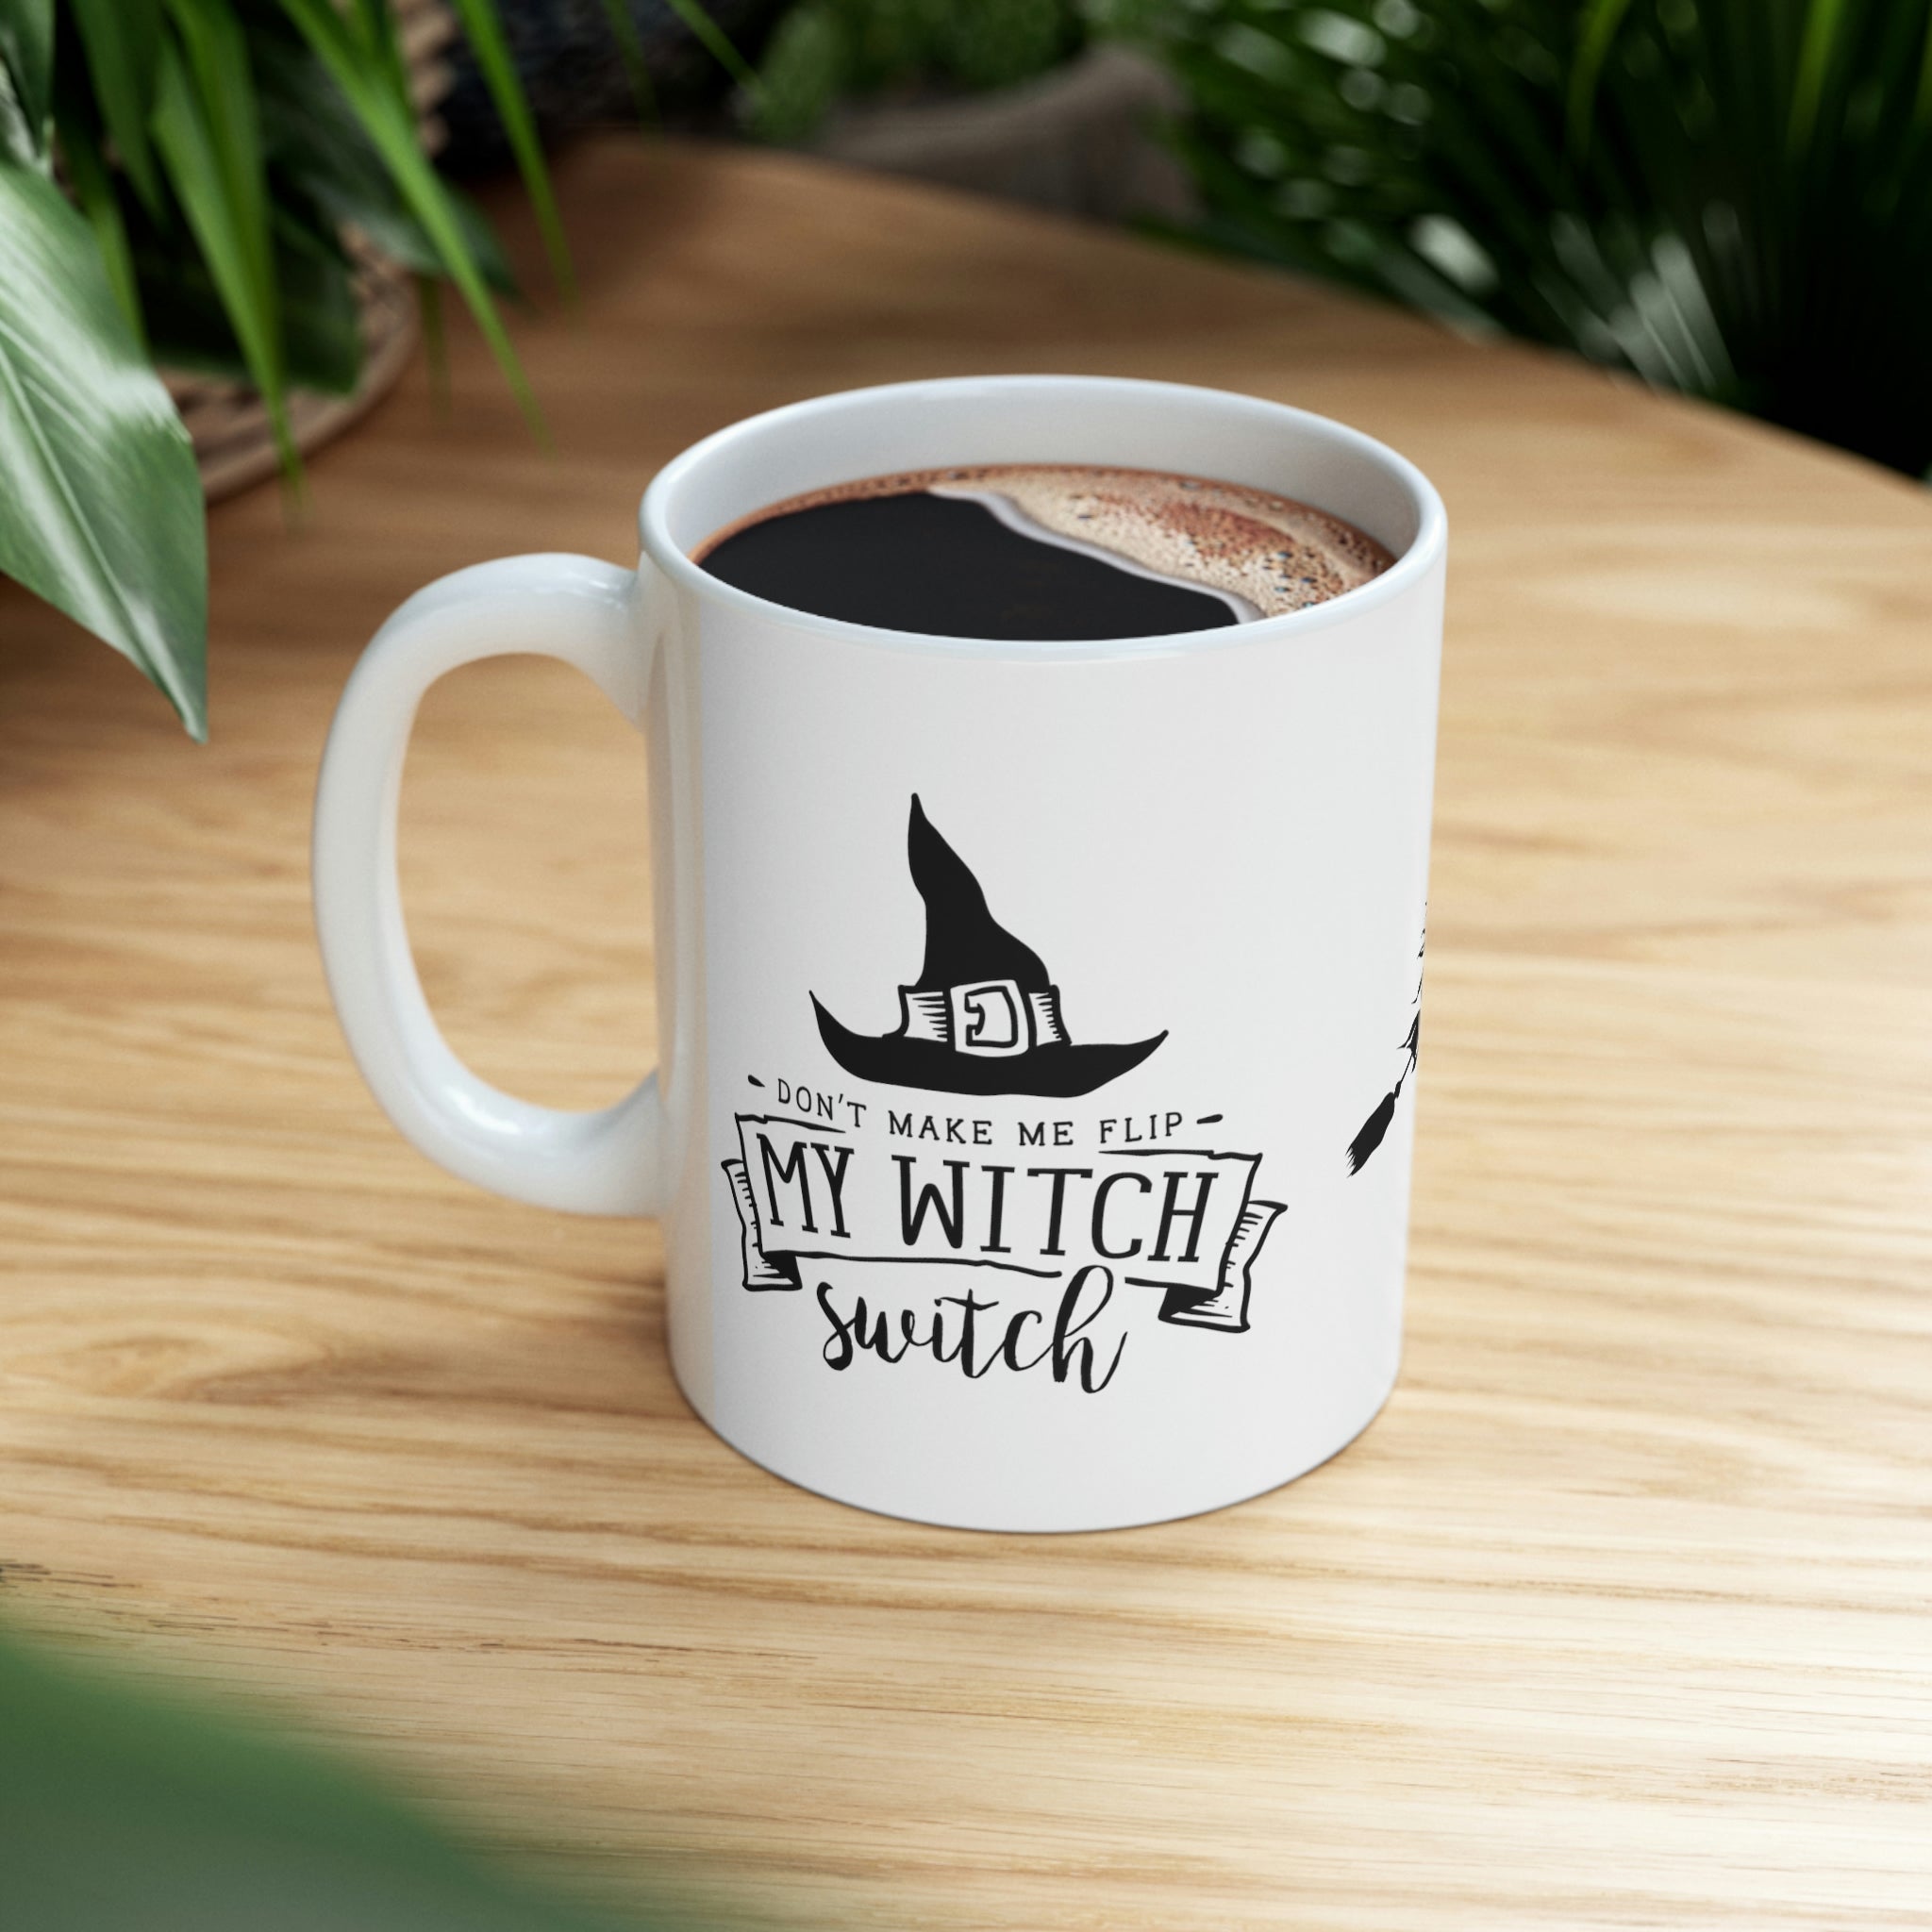 Witch Switch Ceramic Mug